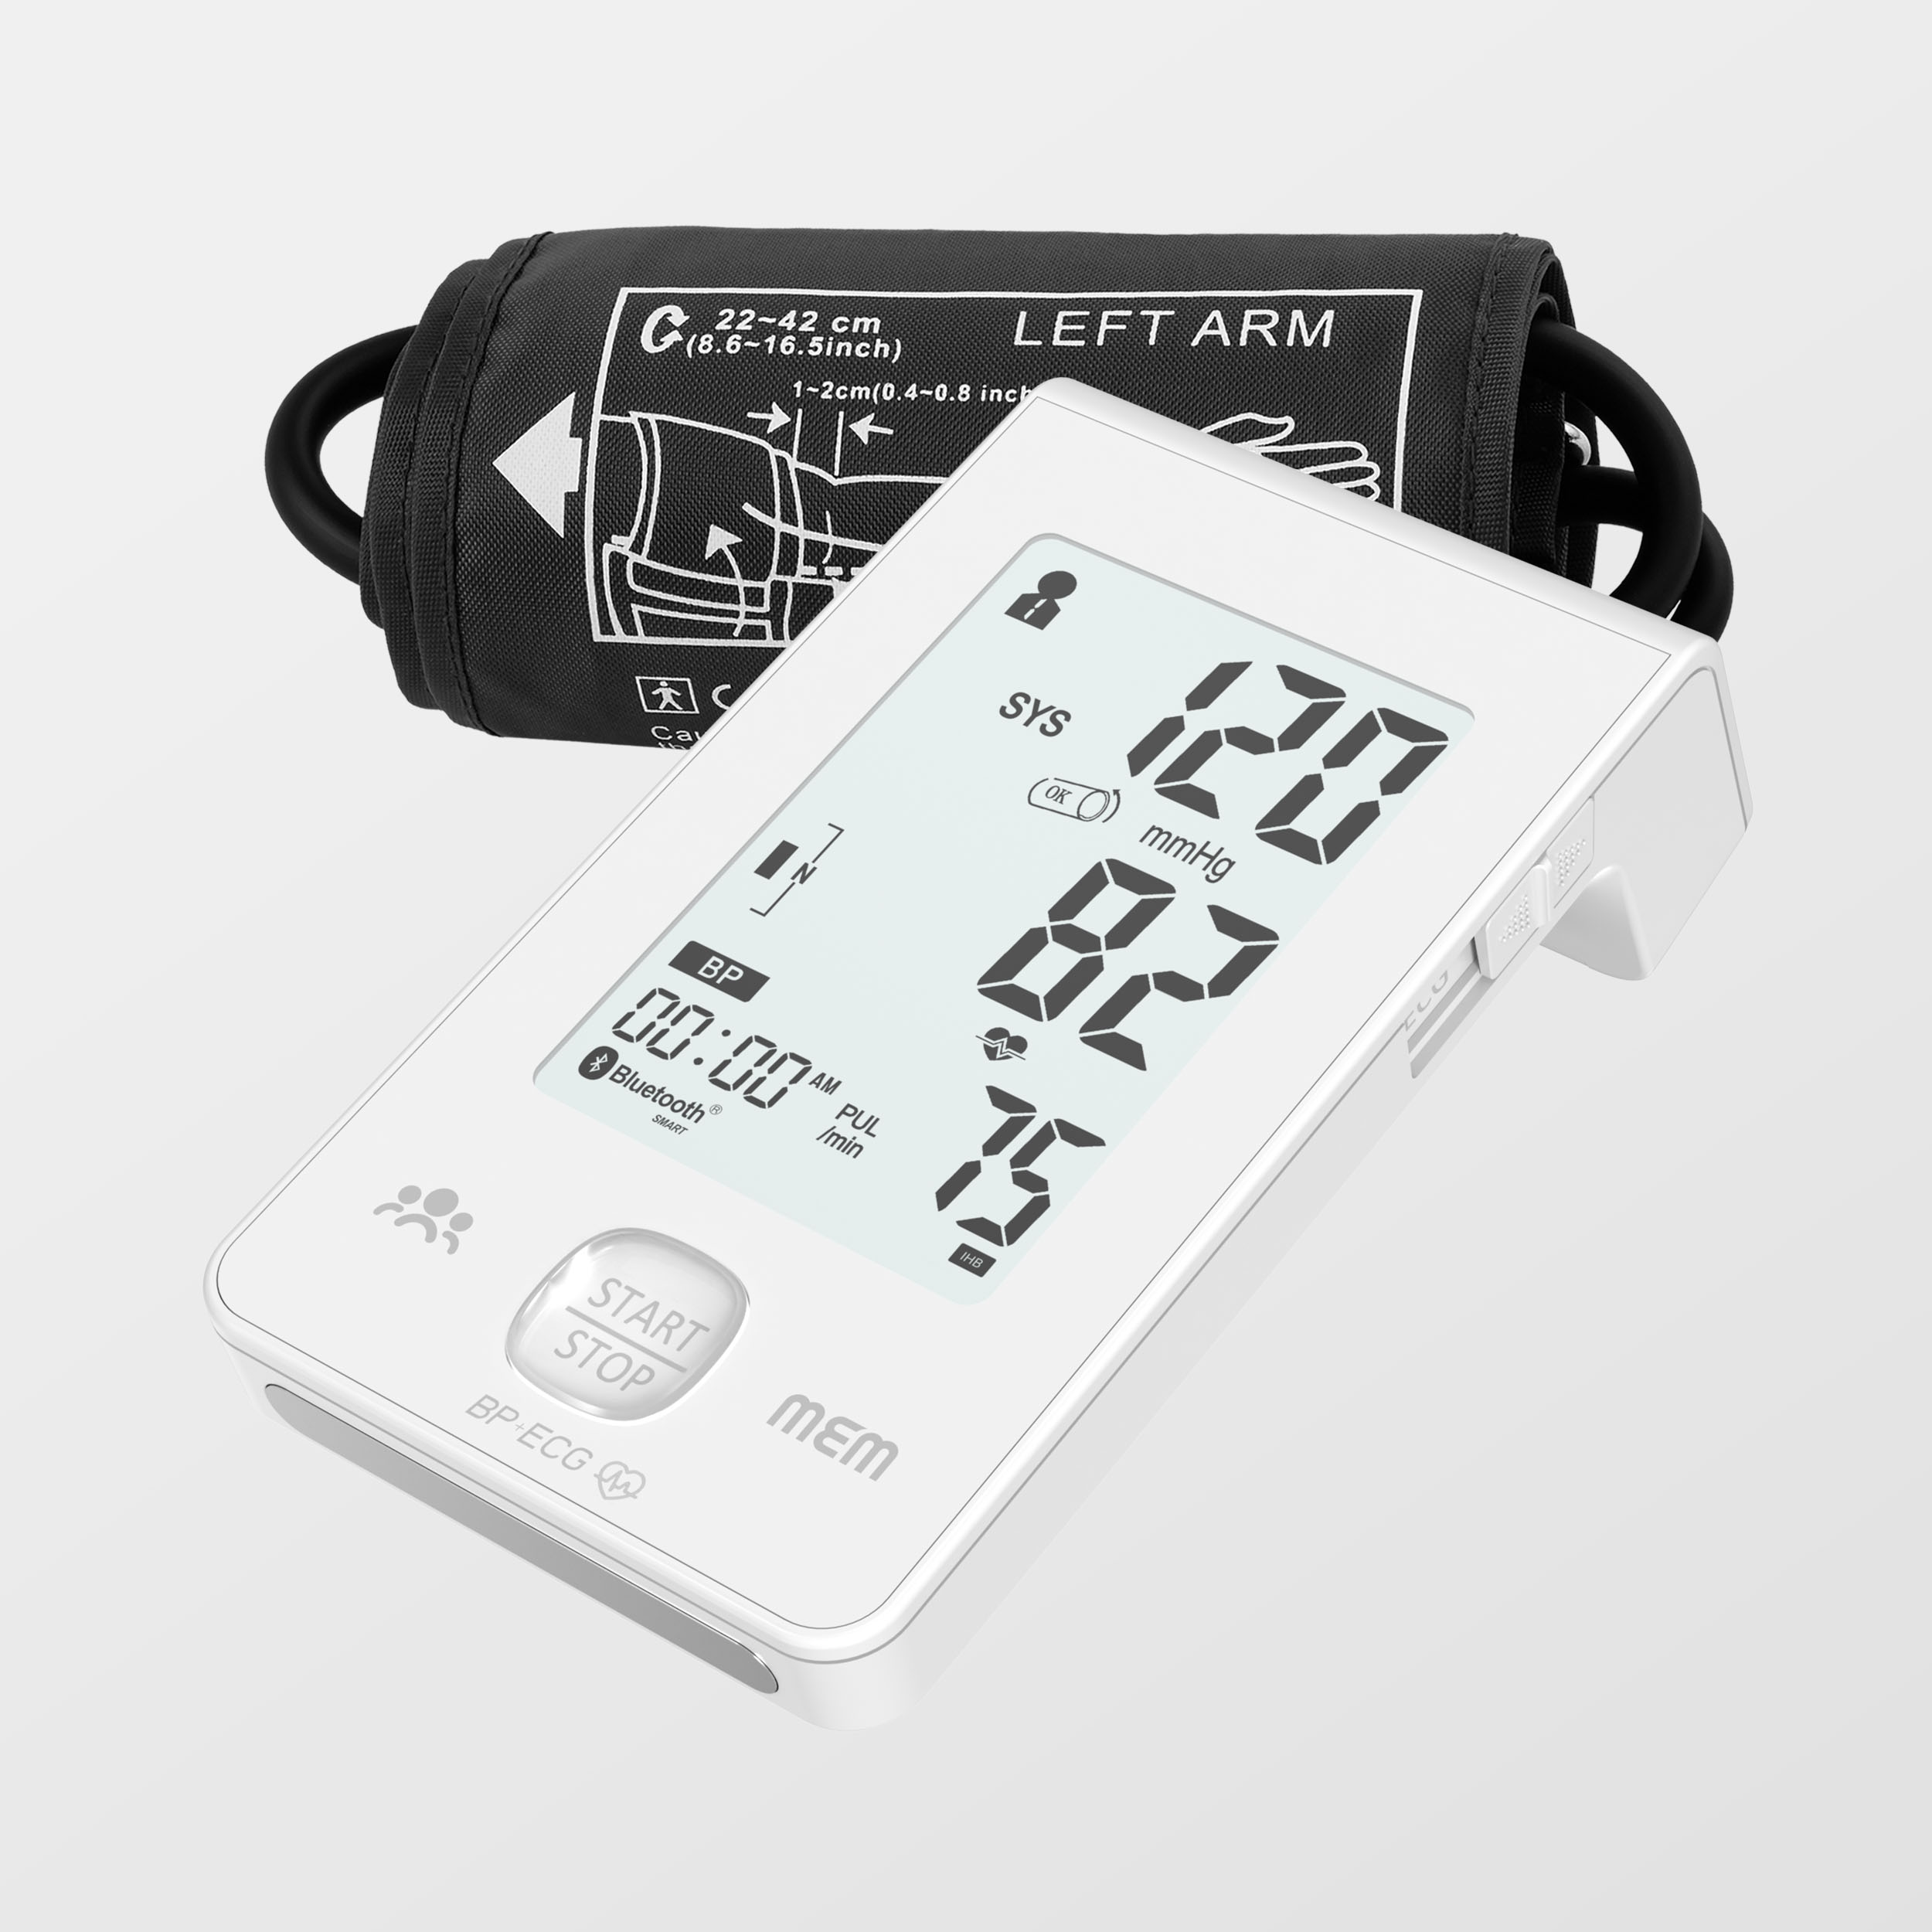 Napakalaking Display Dual Power Supply Intelligent Blood Pressure Monitor na may Ecg